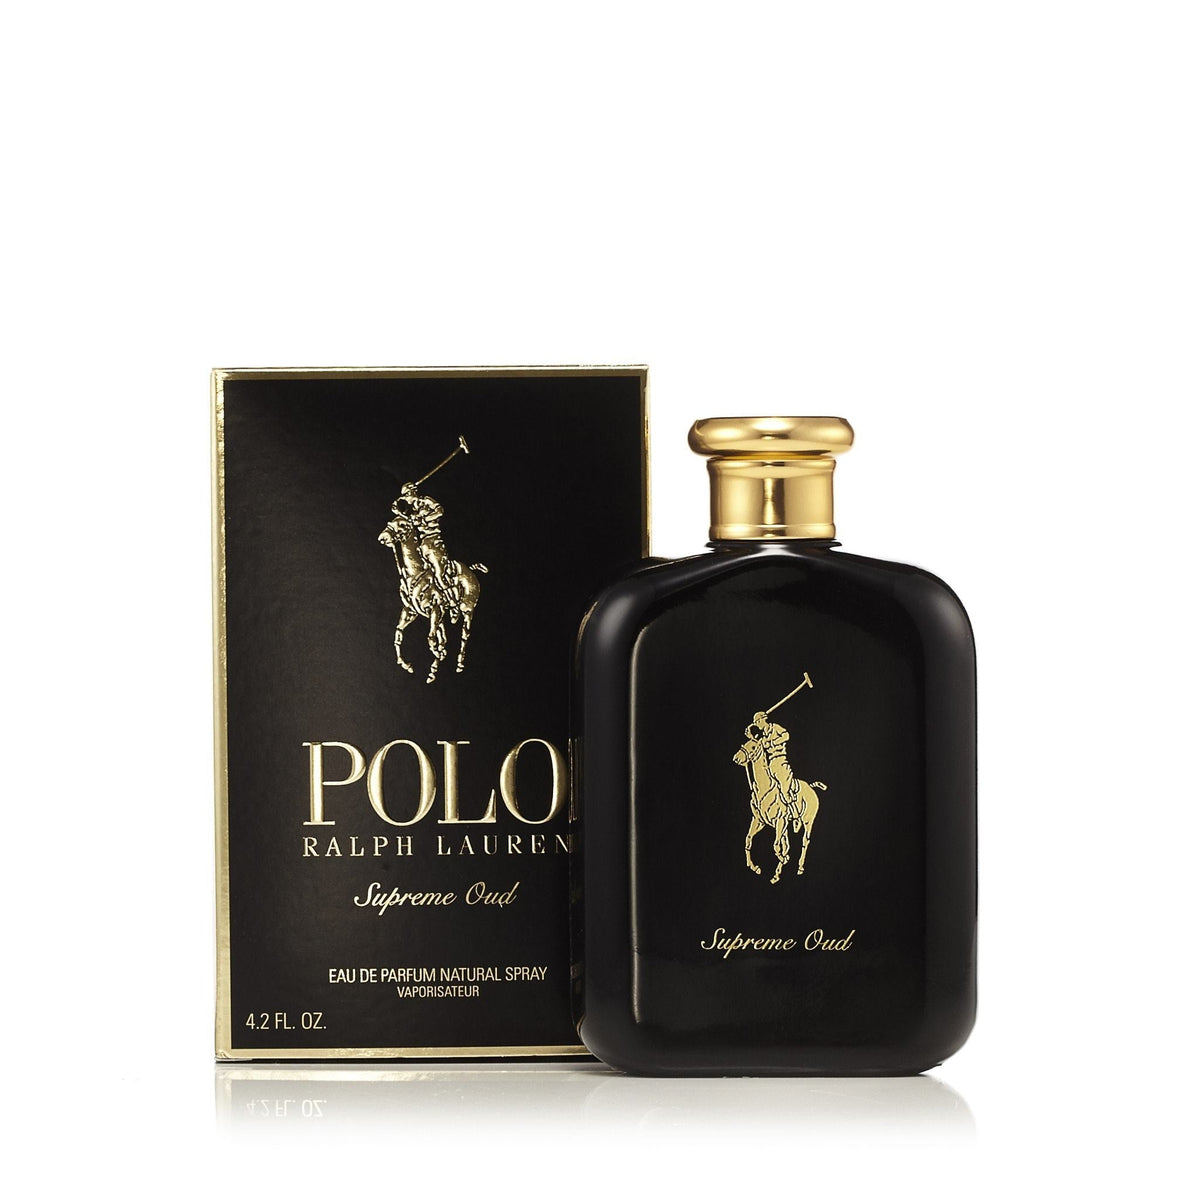 Polo Supreme Oud Eau de Parfum Spray for Men by Ralph Lauren 4.2 oz.